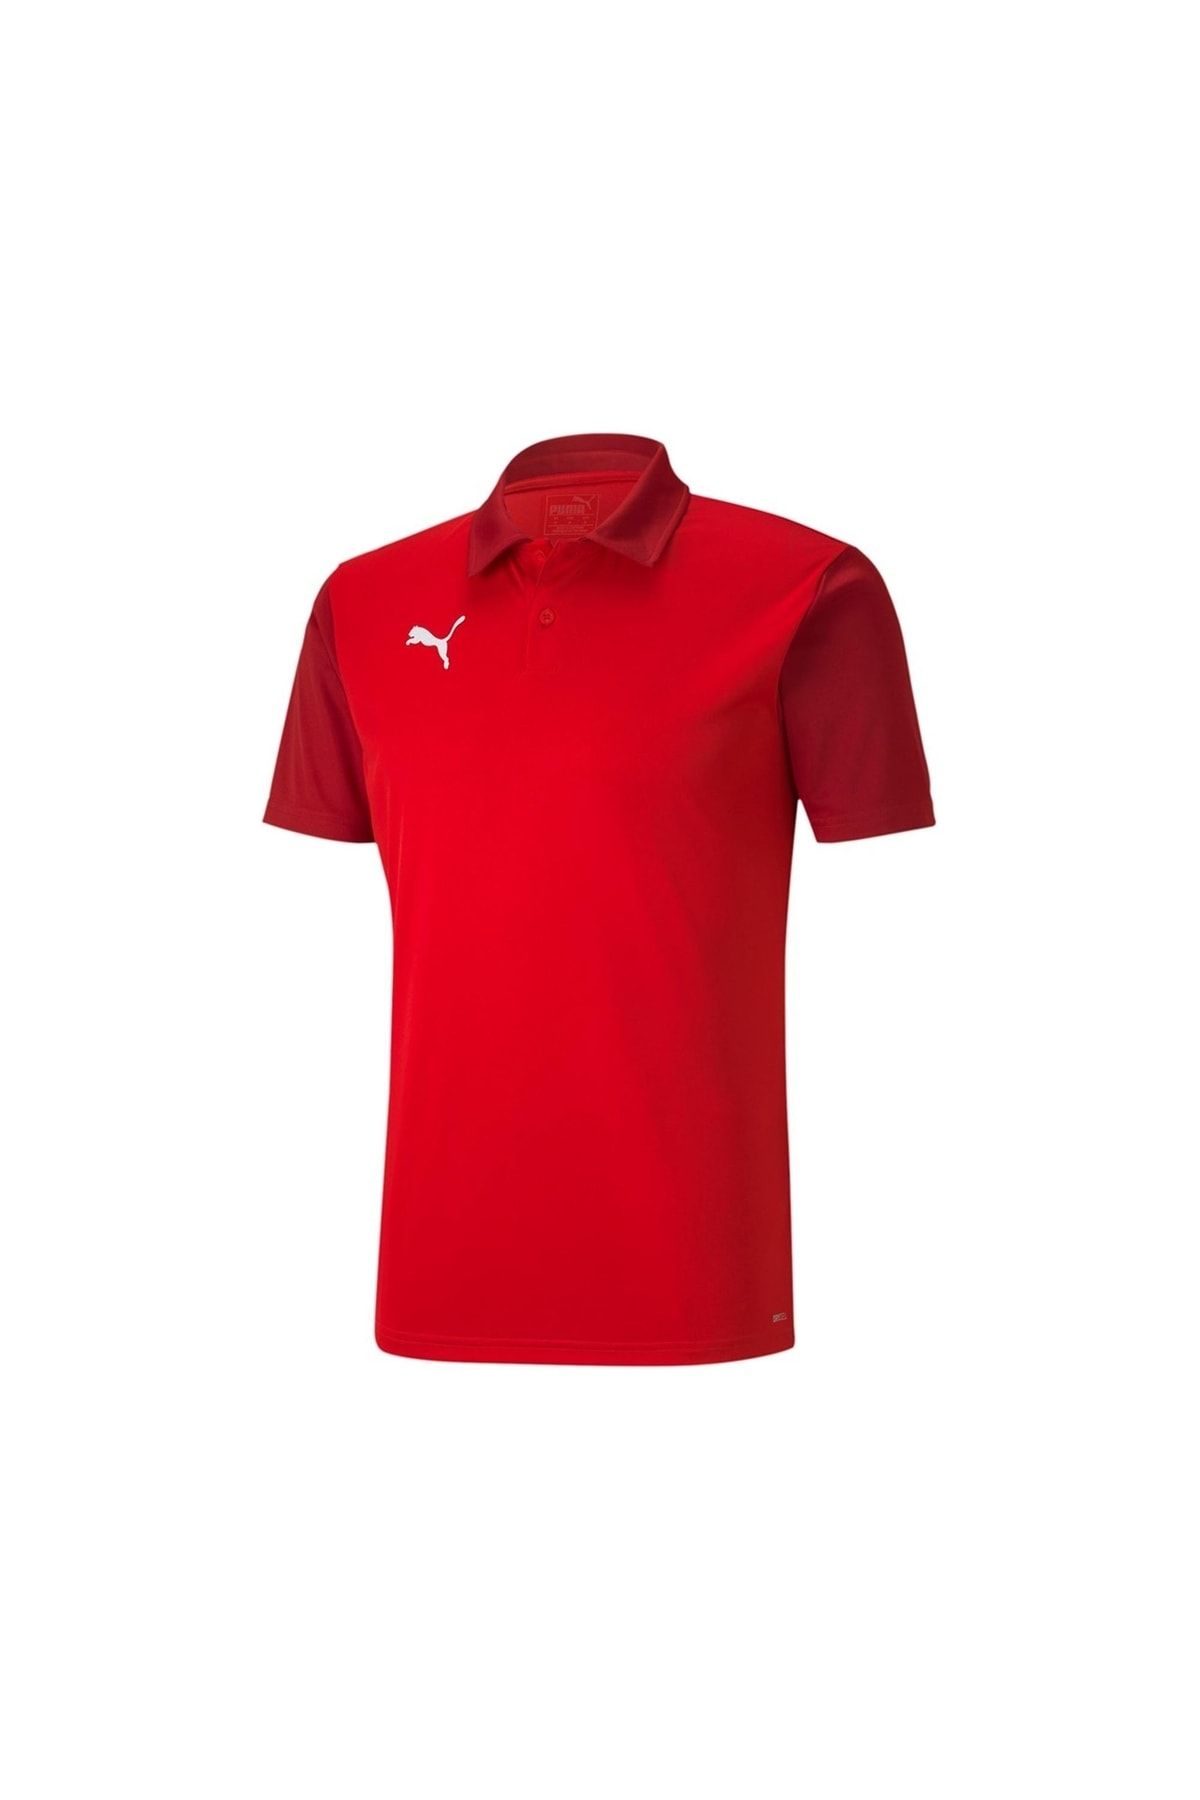 Puma Teamgoal 23 Sideline Polo Red-chili Erkek Futbol Polo Tişörtü 65657701 Kırmızı